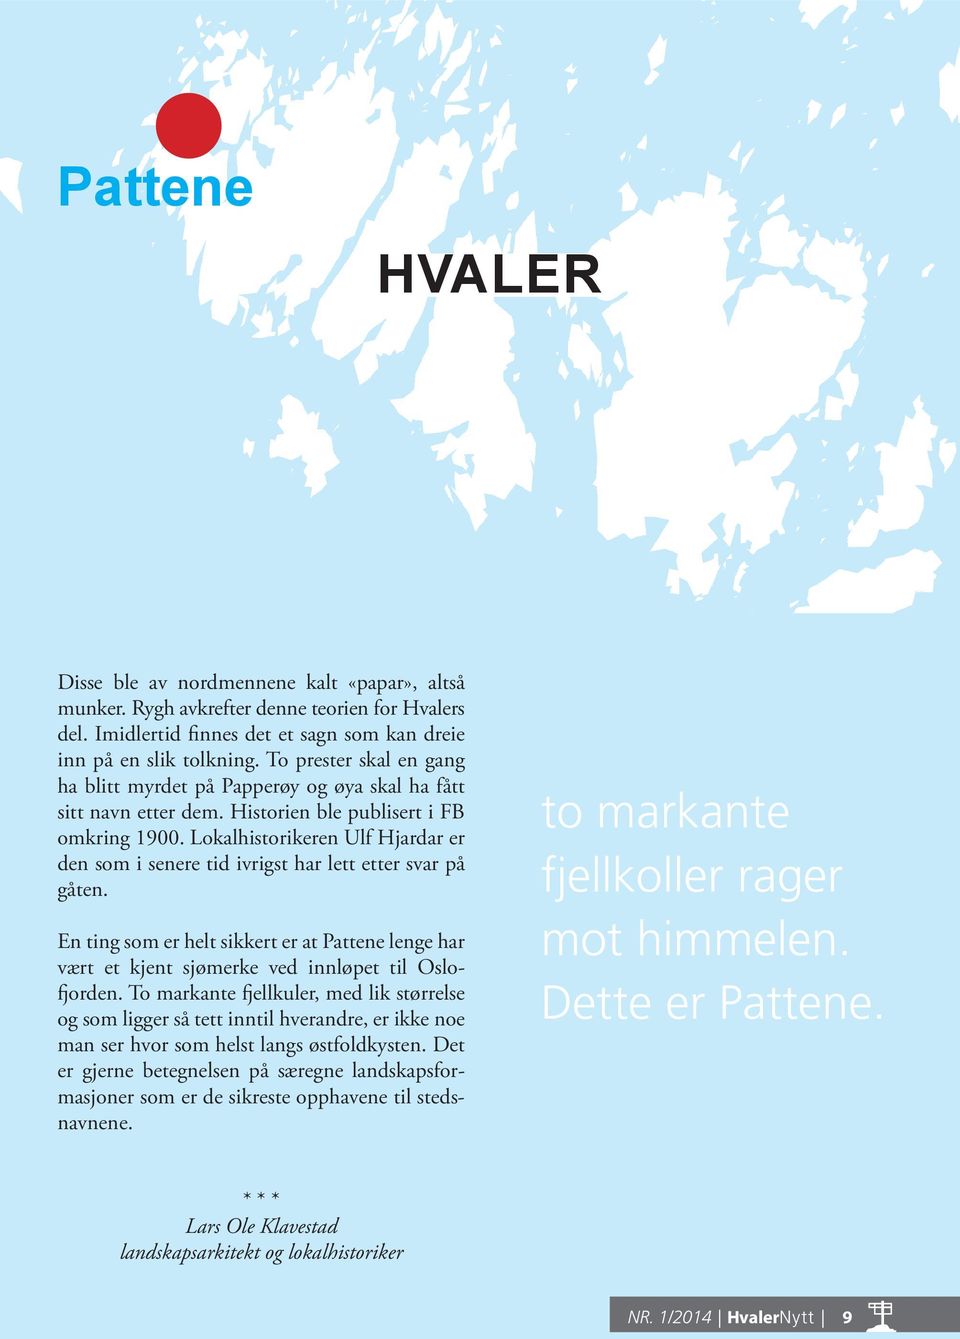 Lokalhistorikeren Ulf Hjardar er den som i senere tid ivrigst har lett etter svar på gåten. En ting som er helt sikkert er at Pattene lenge har vært et kjent sjømerke ved innløpet til Oslofjorden.